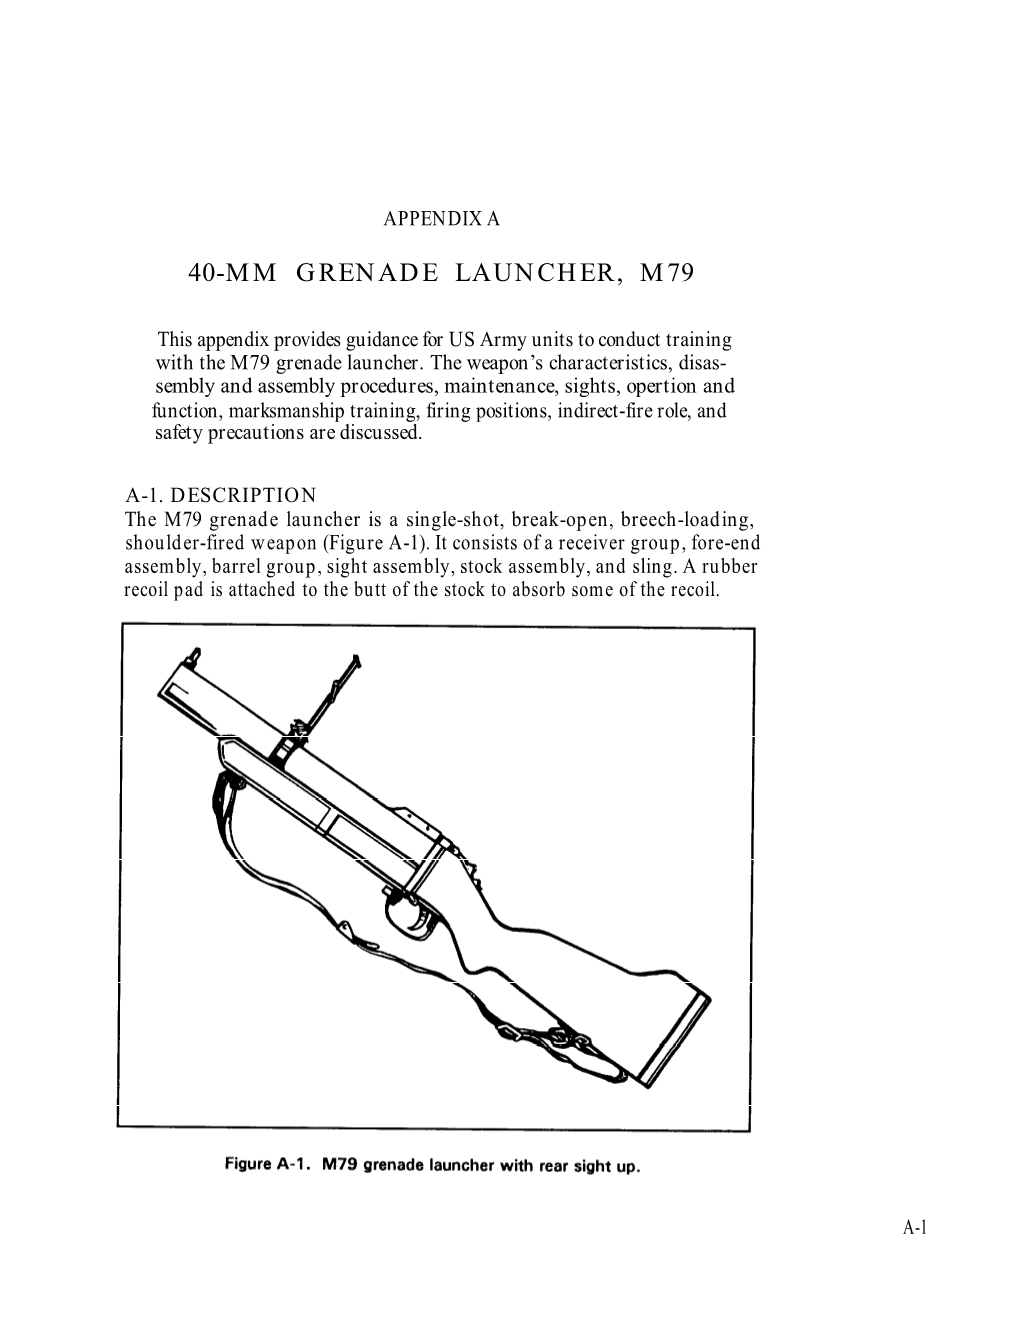 40-Mm Grenade Launcher, M79